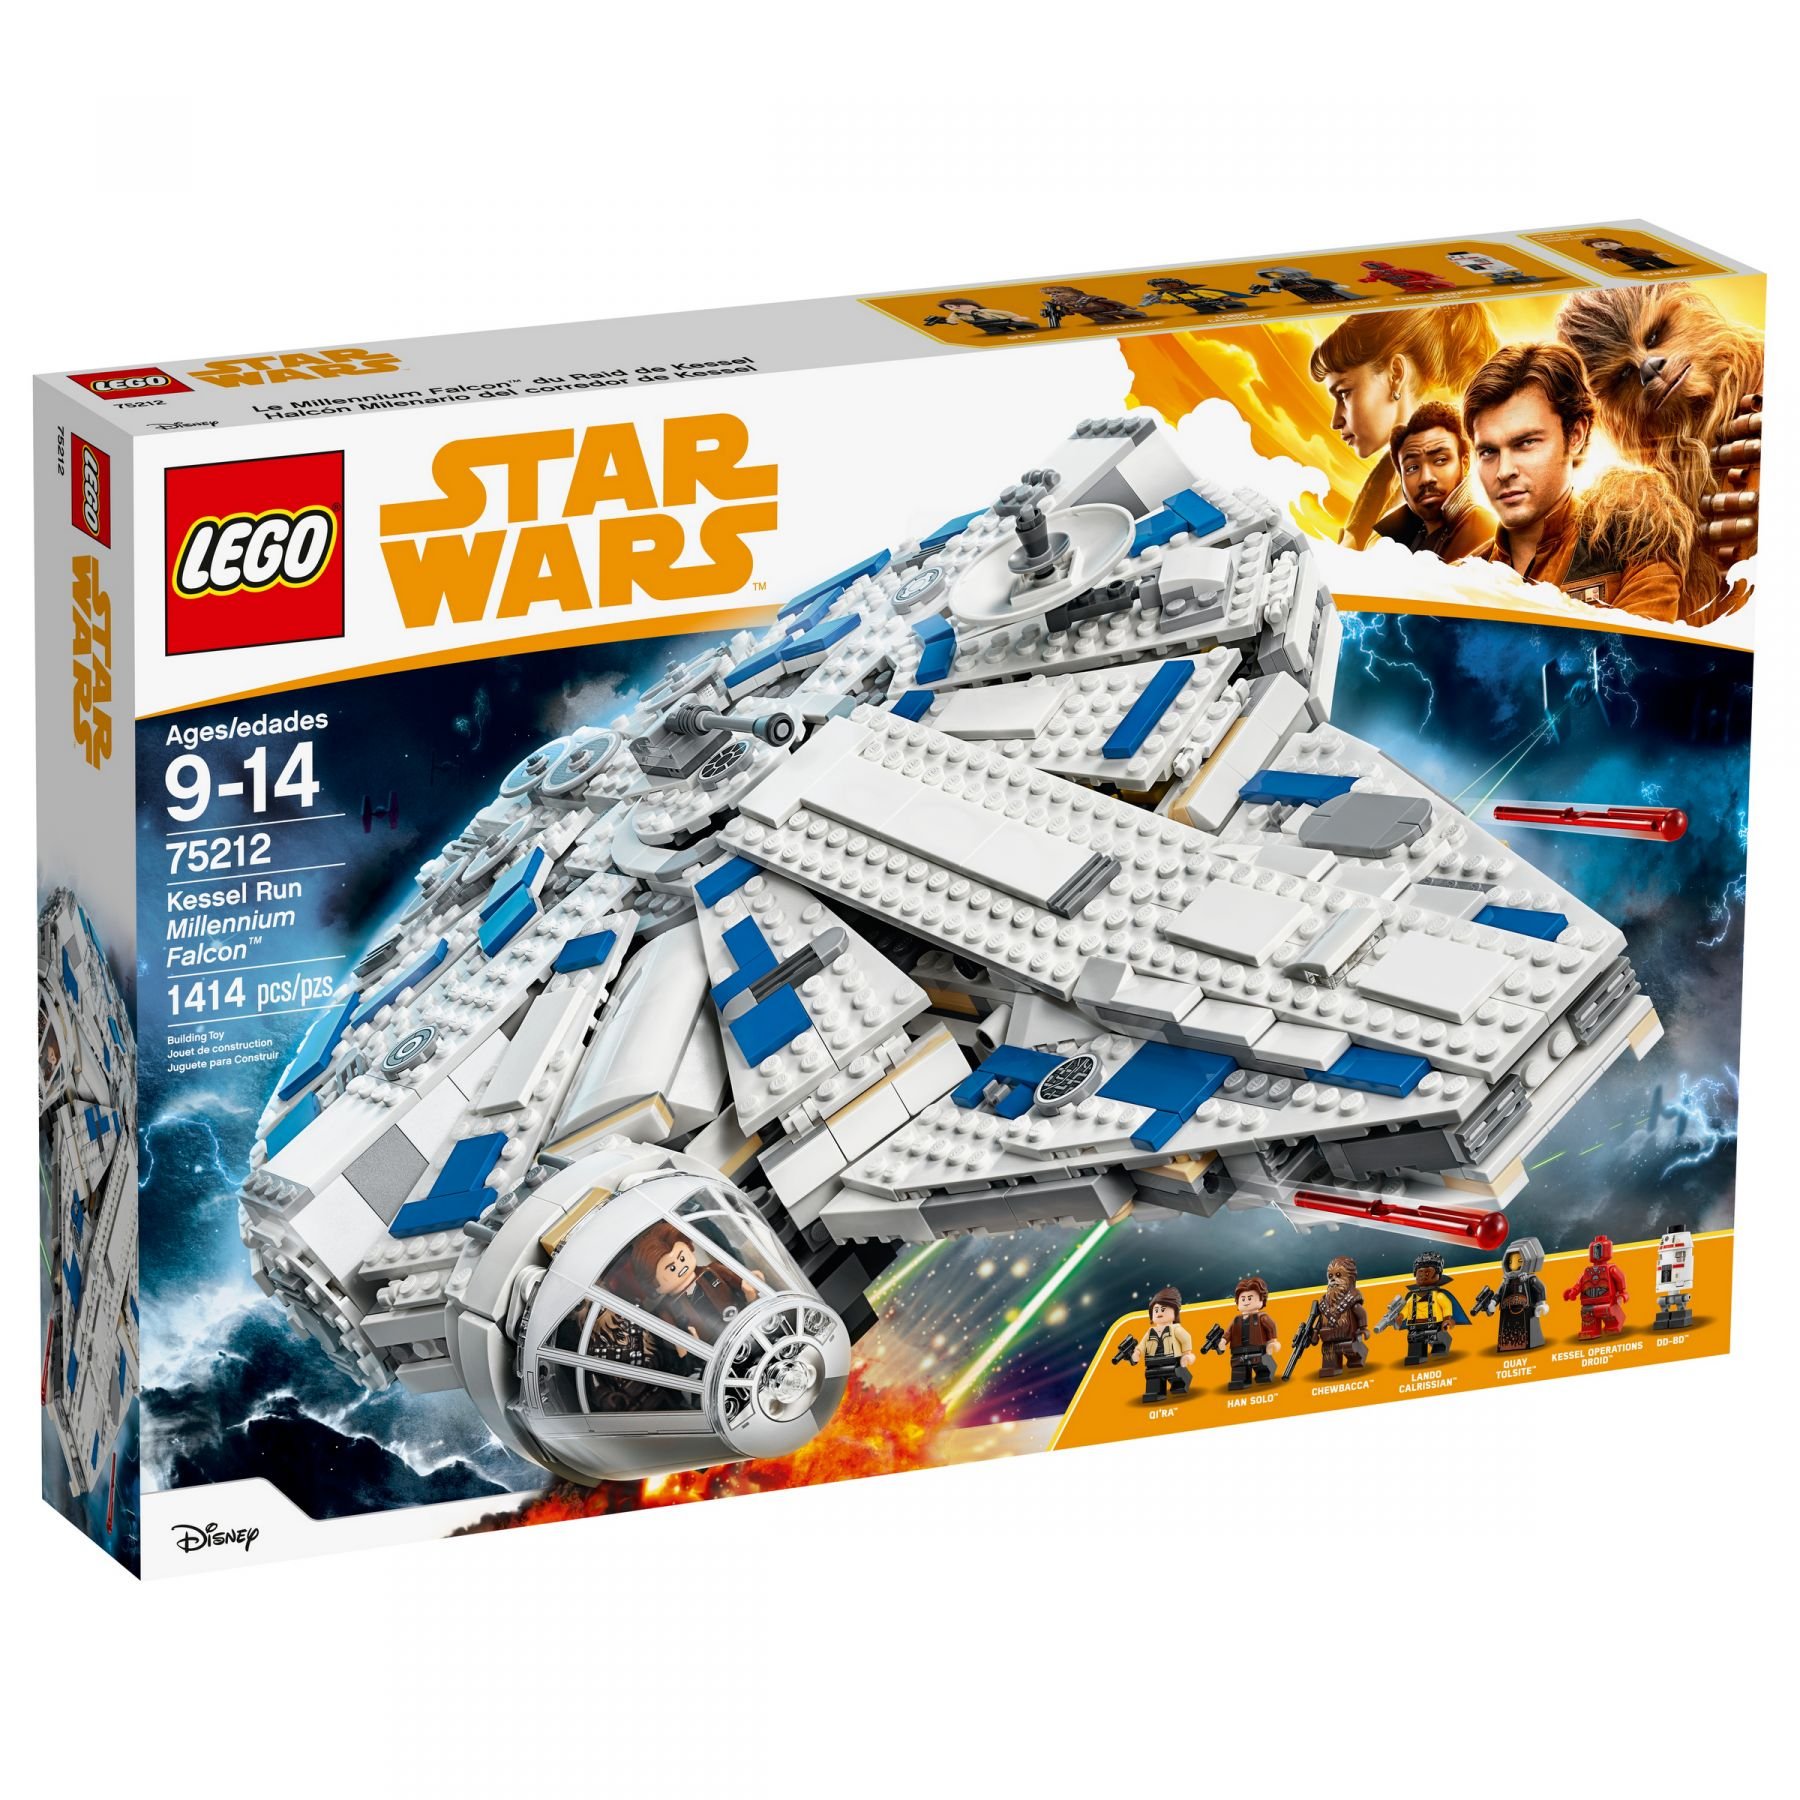 LEGO Star Wars 75212 Kessel Run Millennium Falcon™ LEGO_75212_alt1.jpg